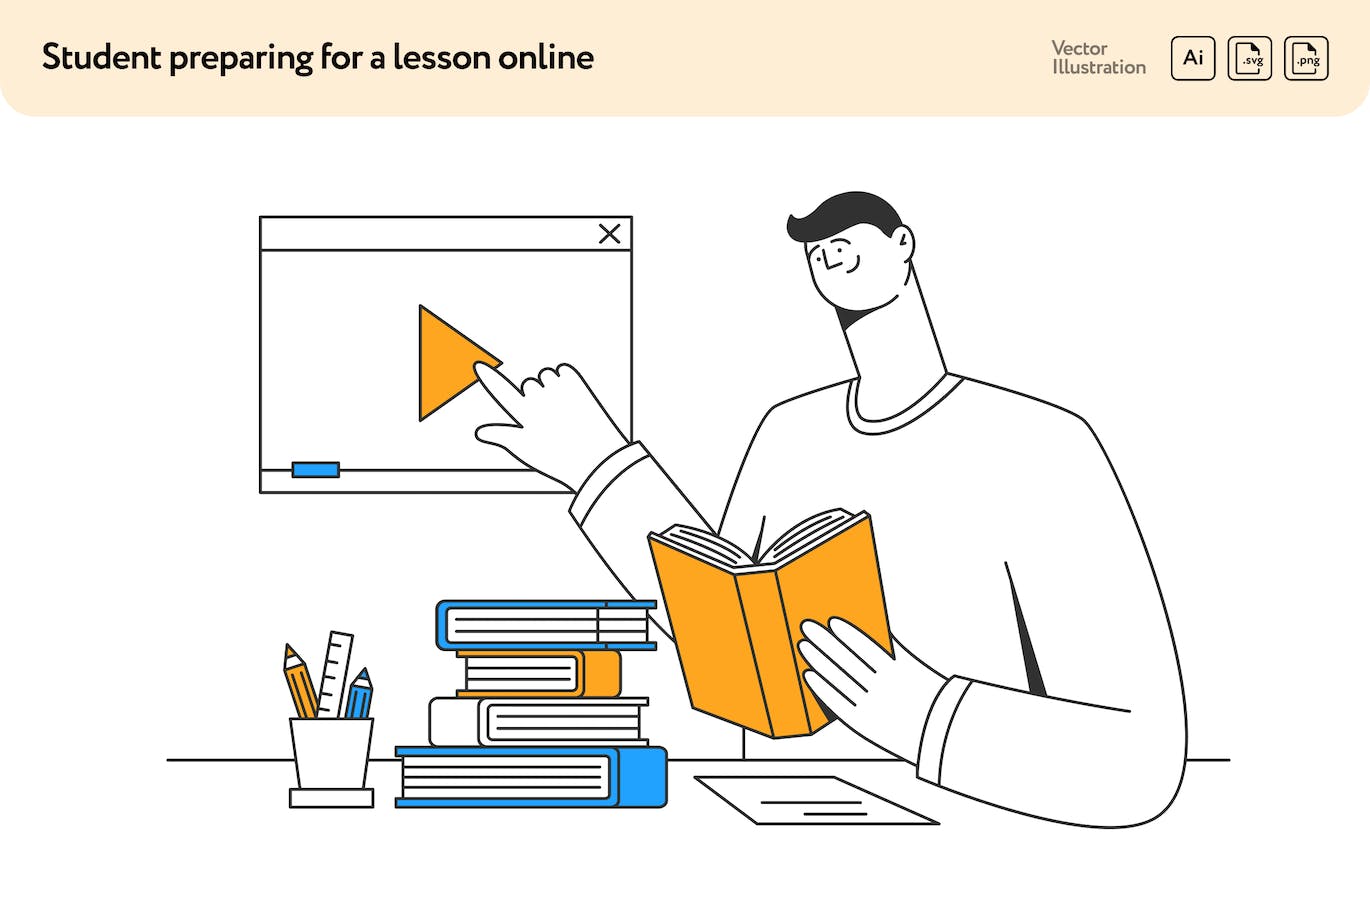 学生在线备课矢量插画素材 Student Preparing for a Lesson Online-1